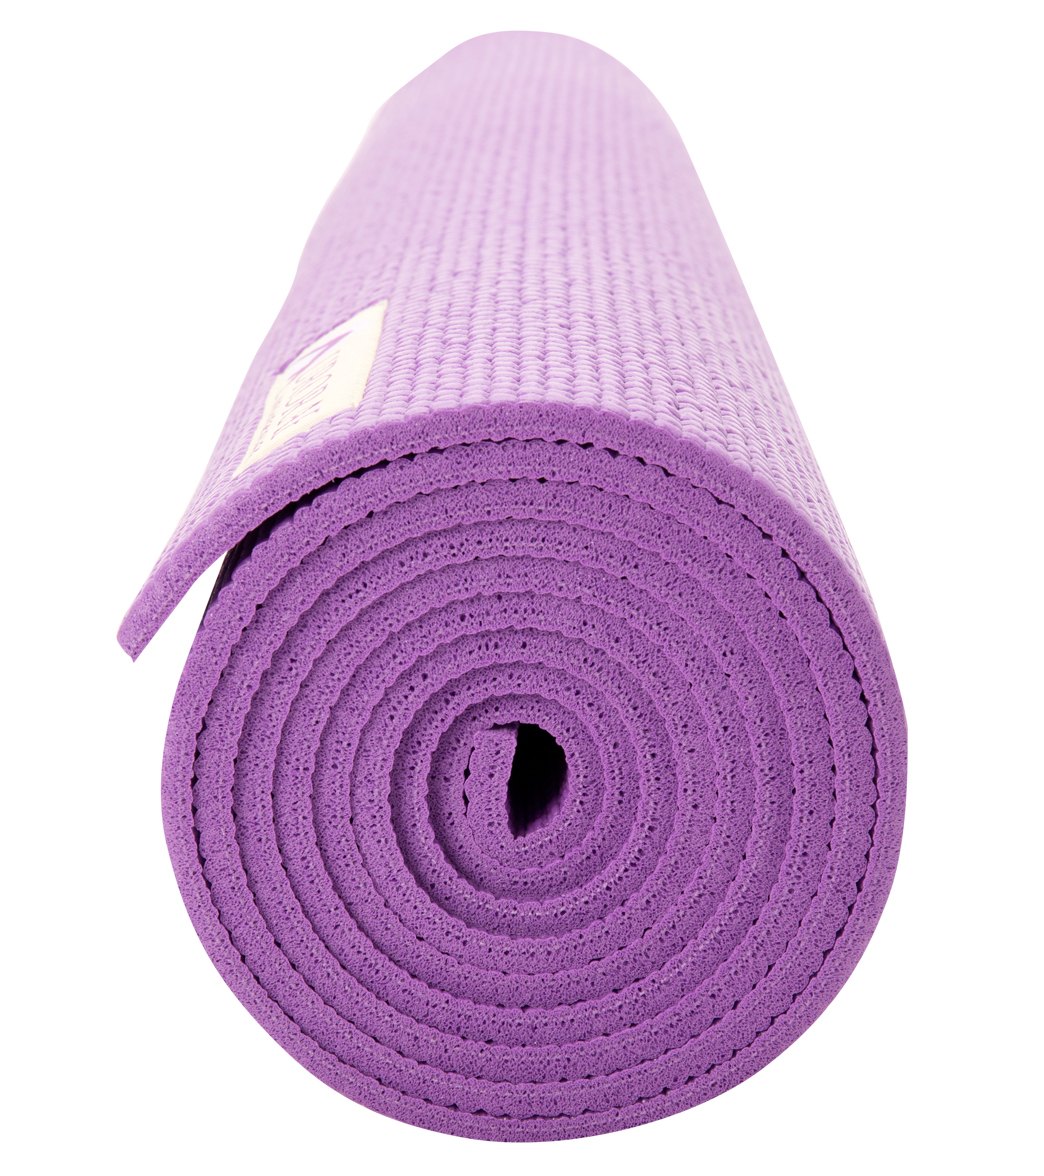 Bodyband Yoga Mat For Women Men & Kids Tpe Yoga Mat 6mm Yoga Mat